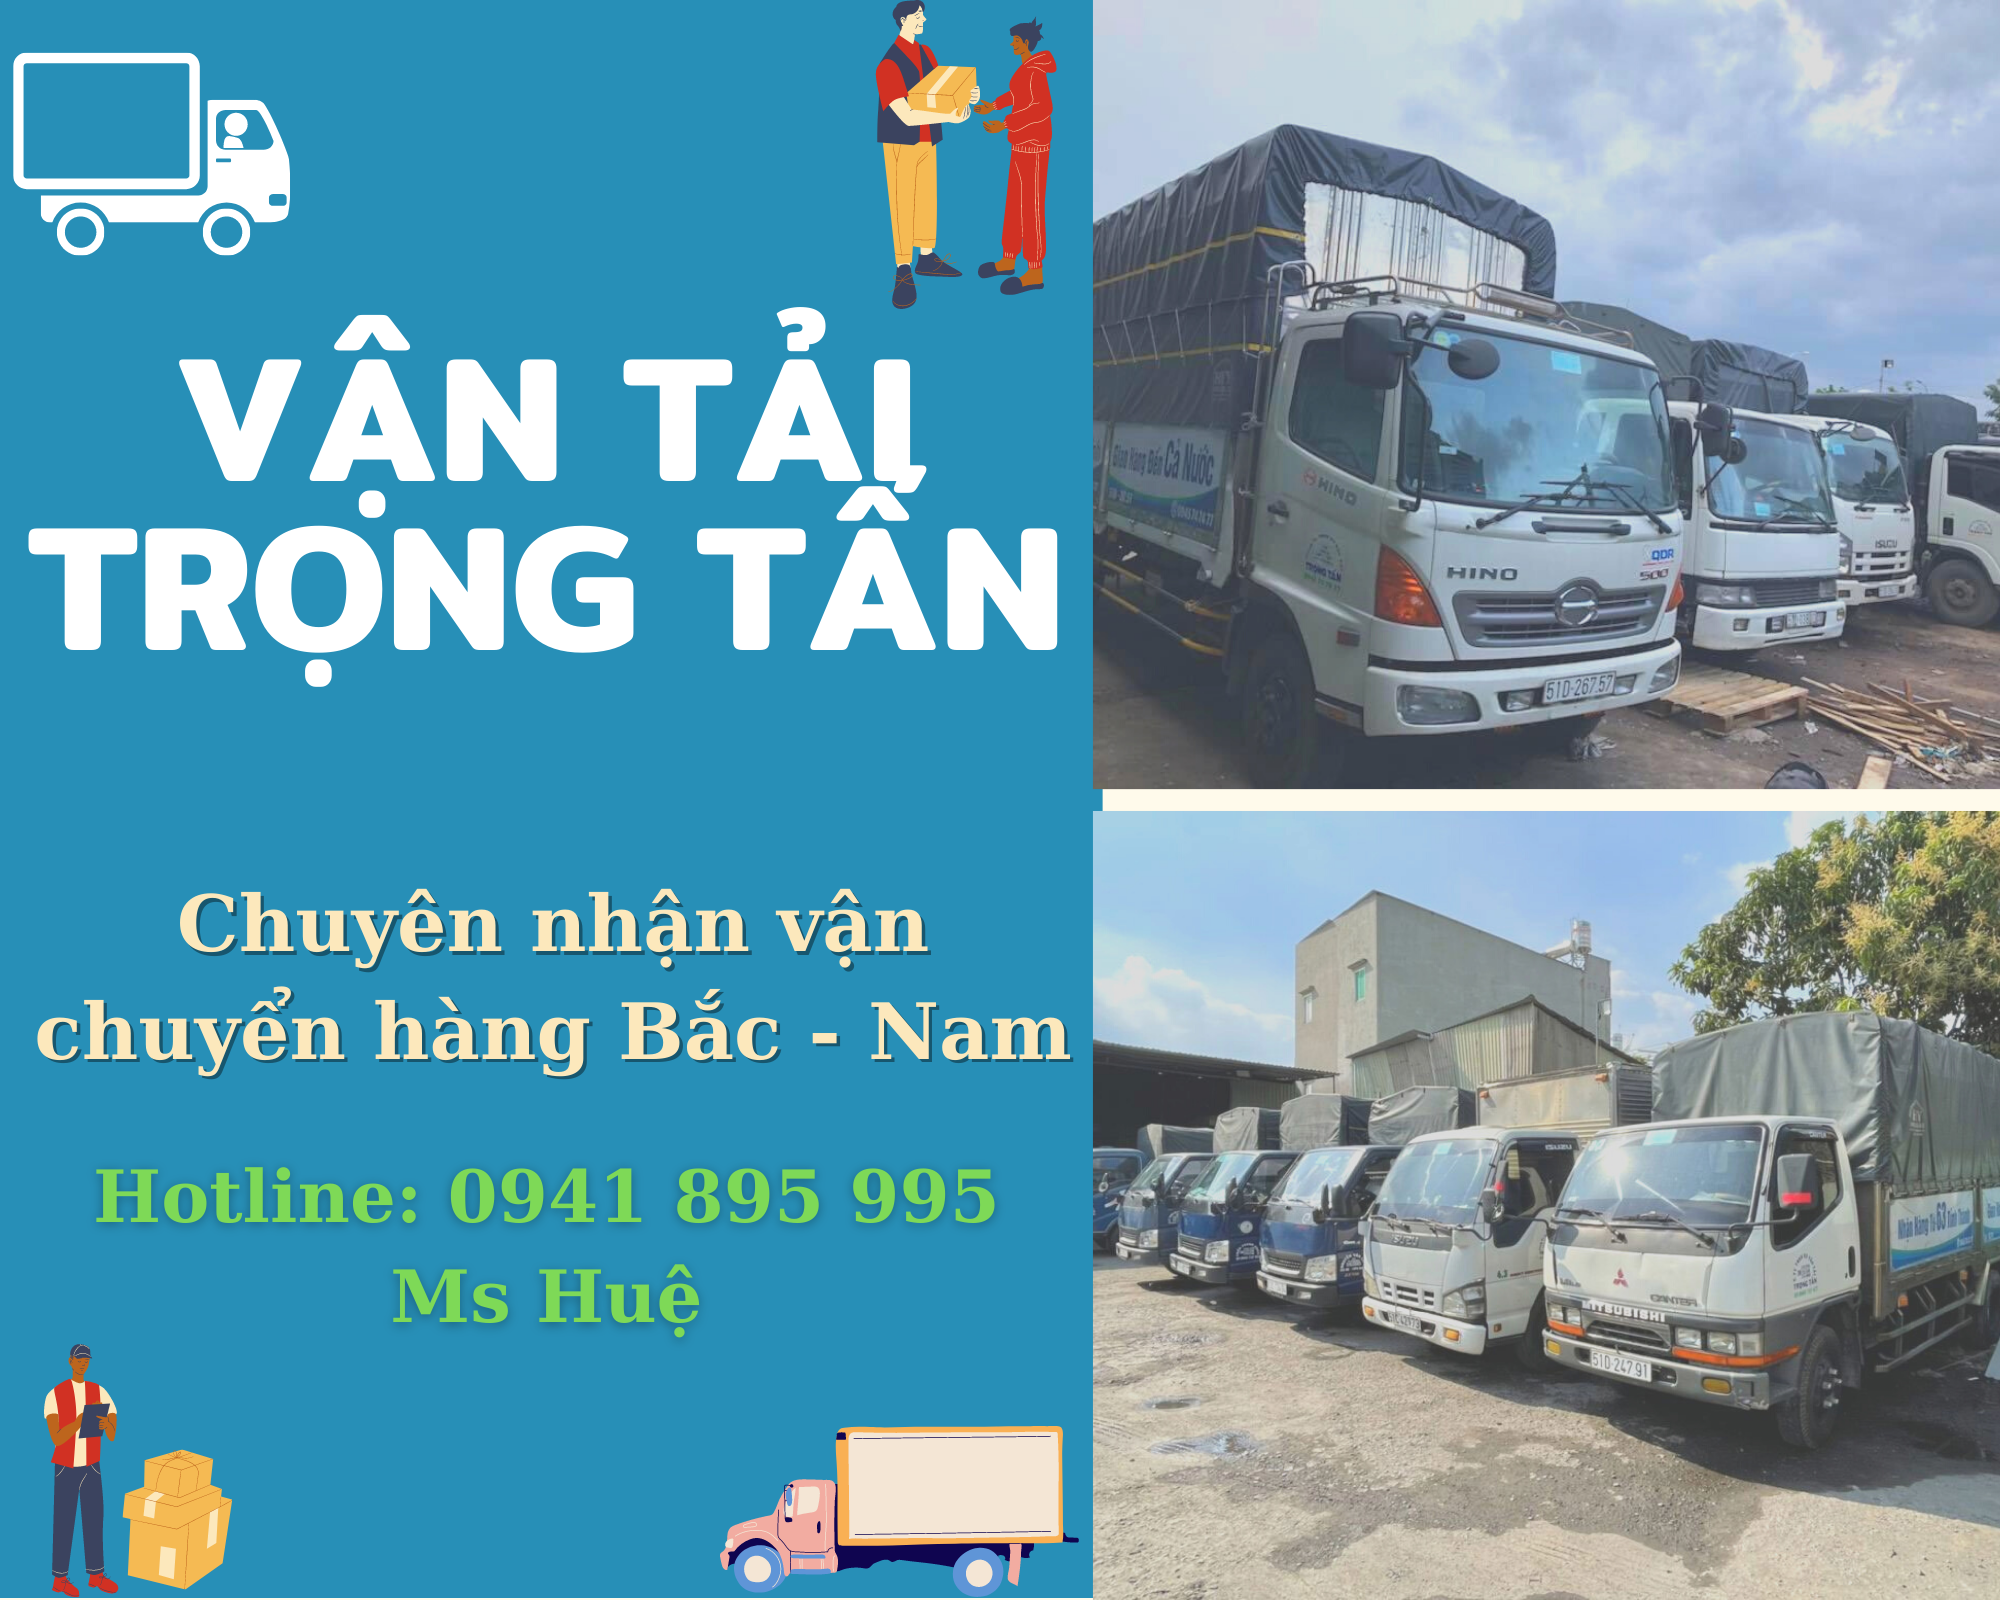 Thuê xe chuyển hàng Sài Gòn - Hải Phòng